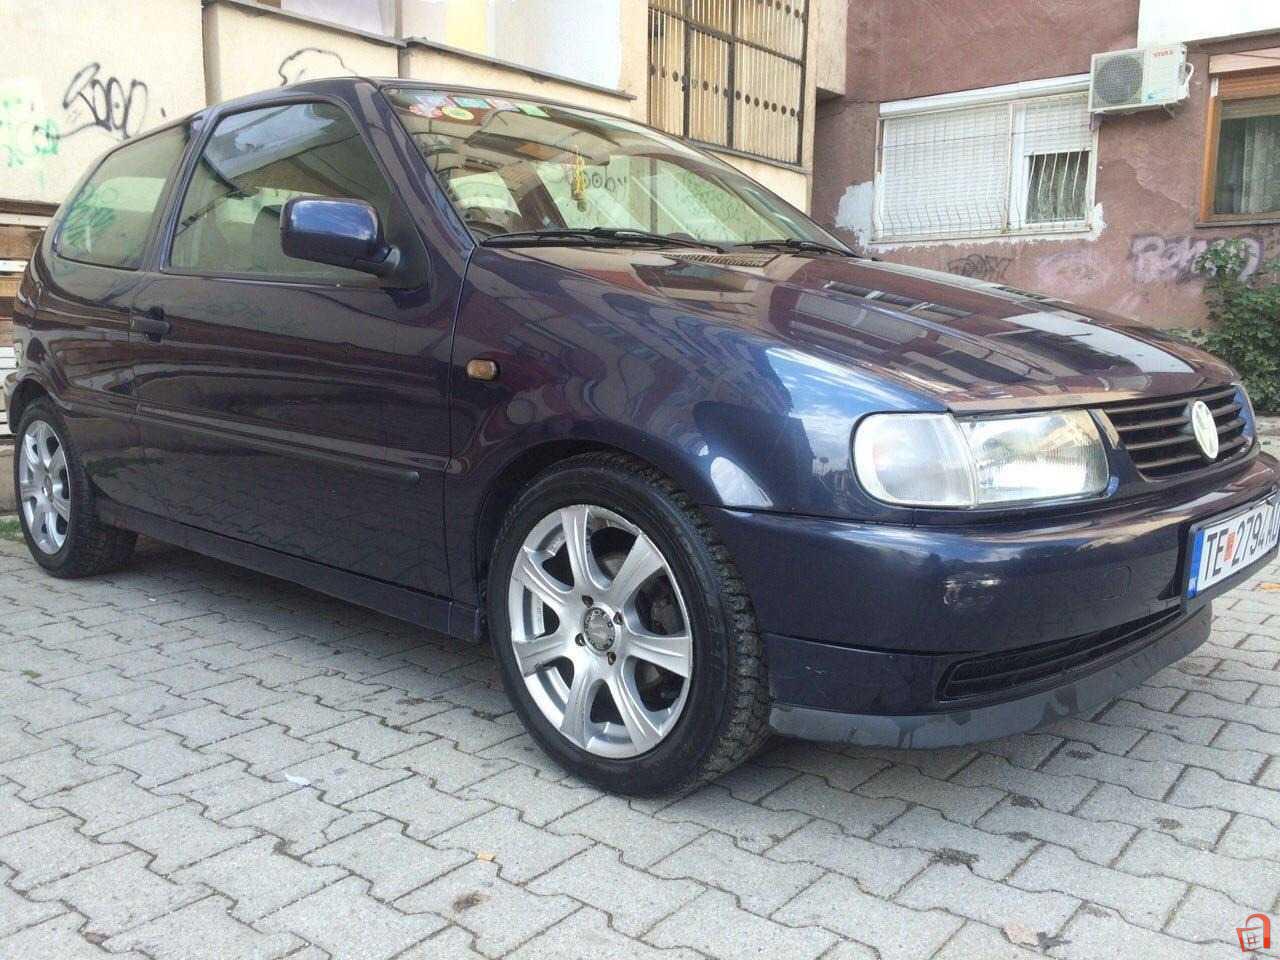 VW POLO 97 Tetovo